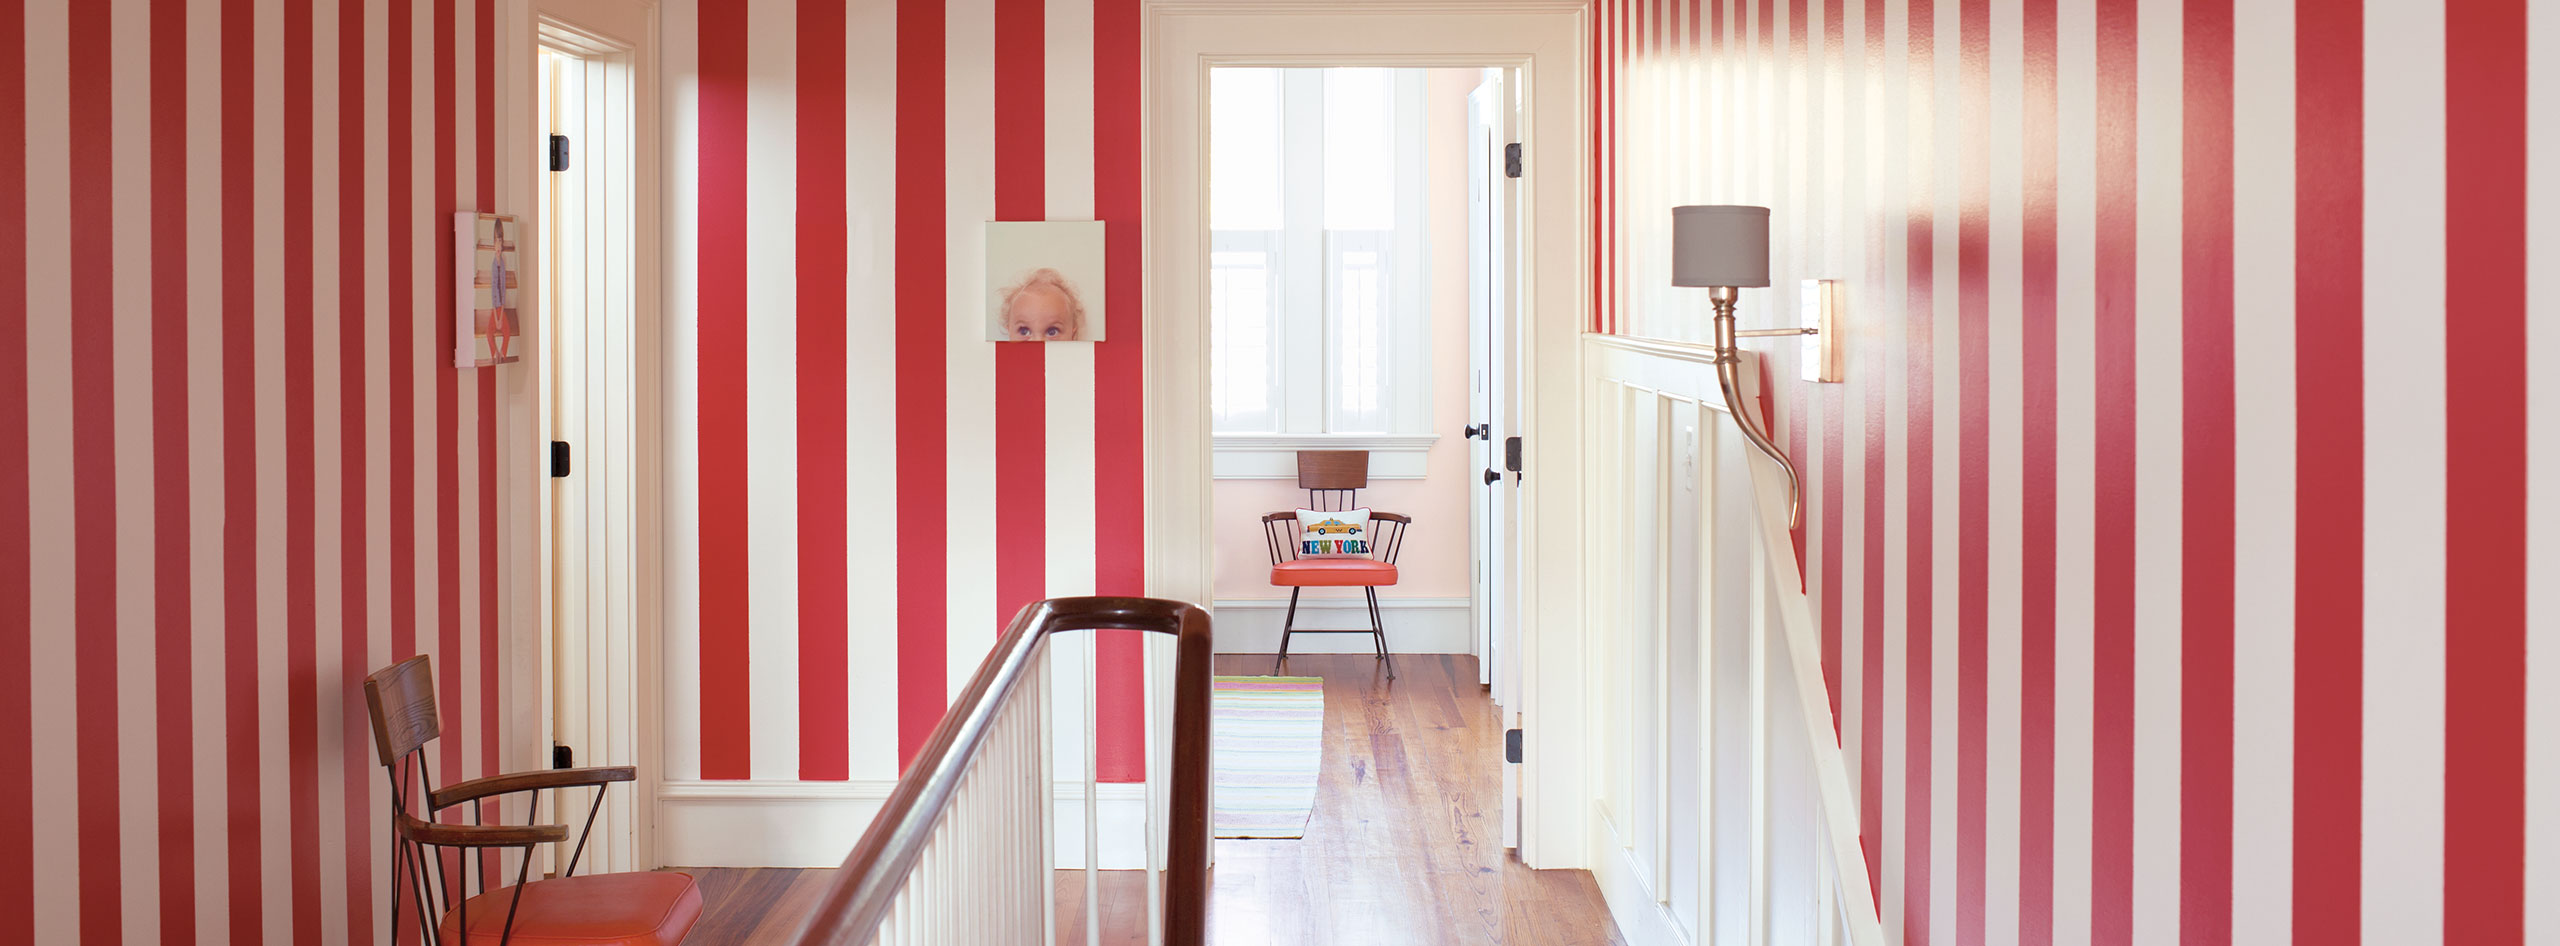 Couloir avec murs à rayures rouges et blanches, chaise des années 1950, œuvre murale originale, moulures et lambris blancs et escalier.